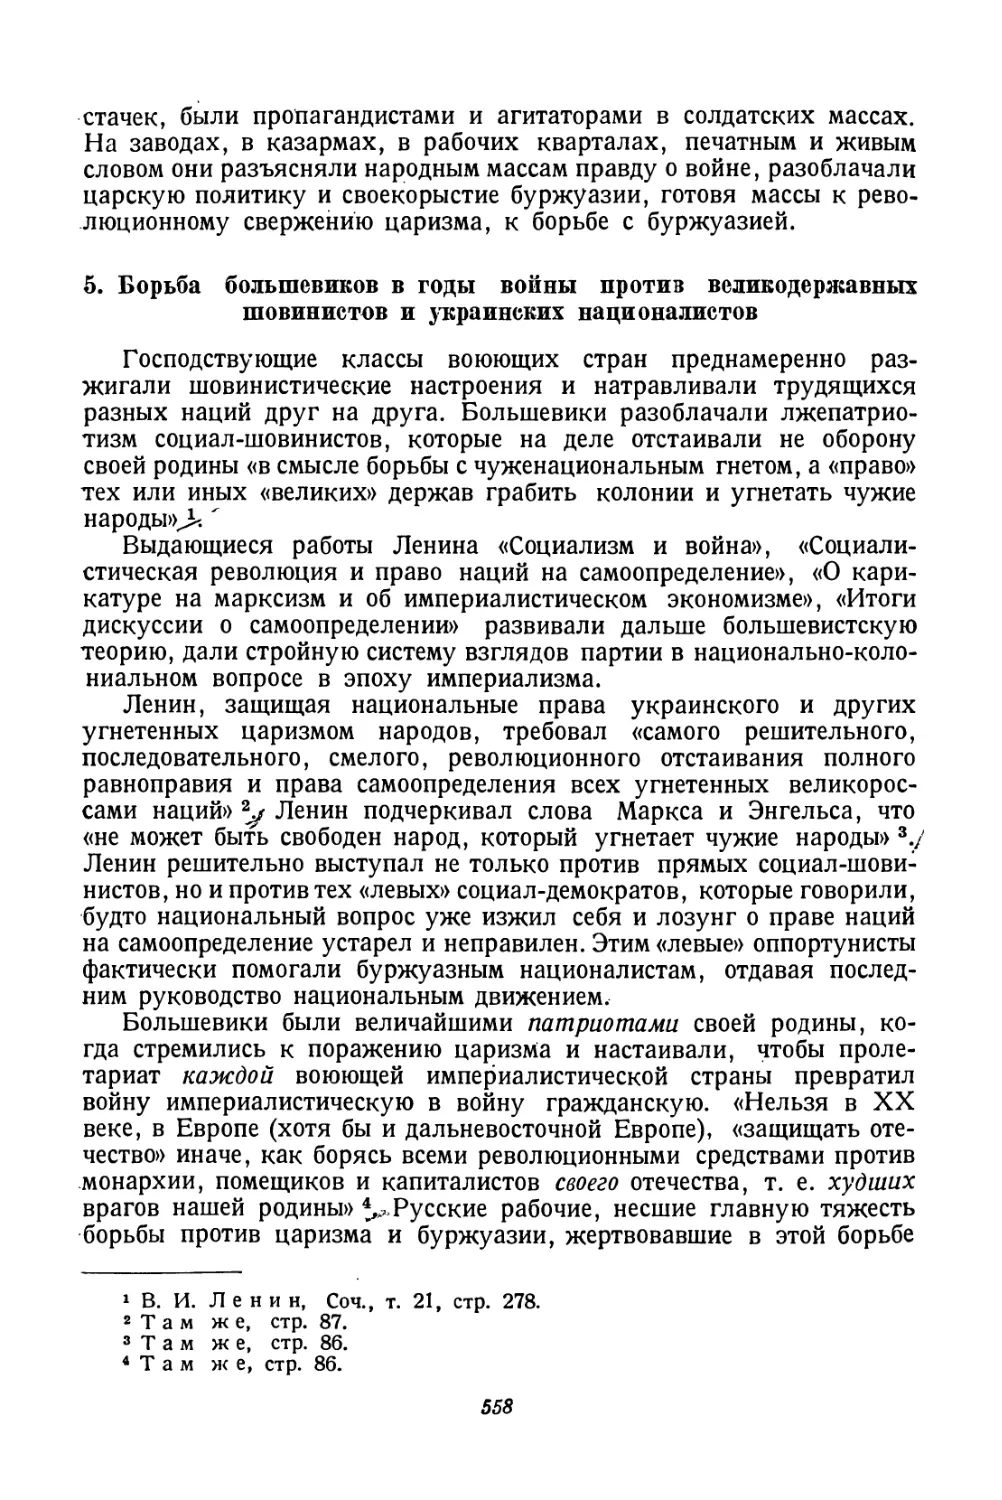 5. Борьба большевиков в годы войны против великодержавных шовинистов и украинских националистов